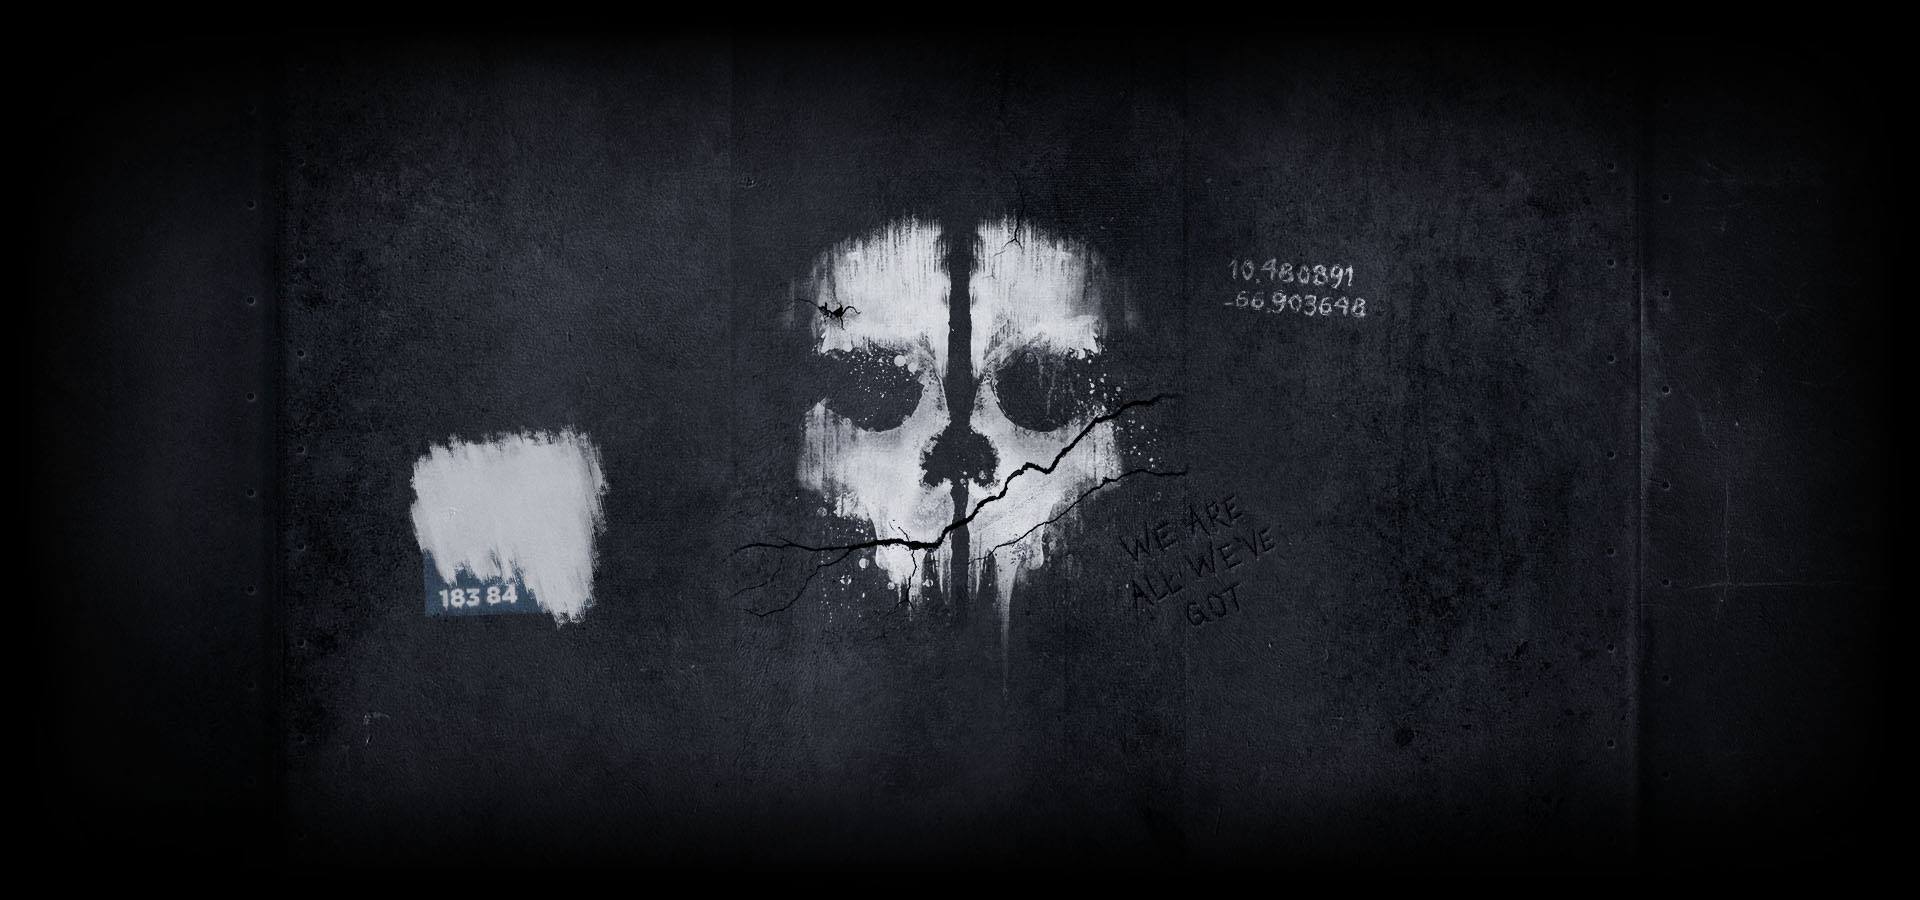 Call of Duty - Ghosts : Discutions générale et les teaser / trailer / présentation vidéo 97601810